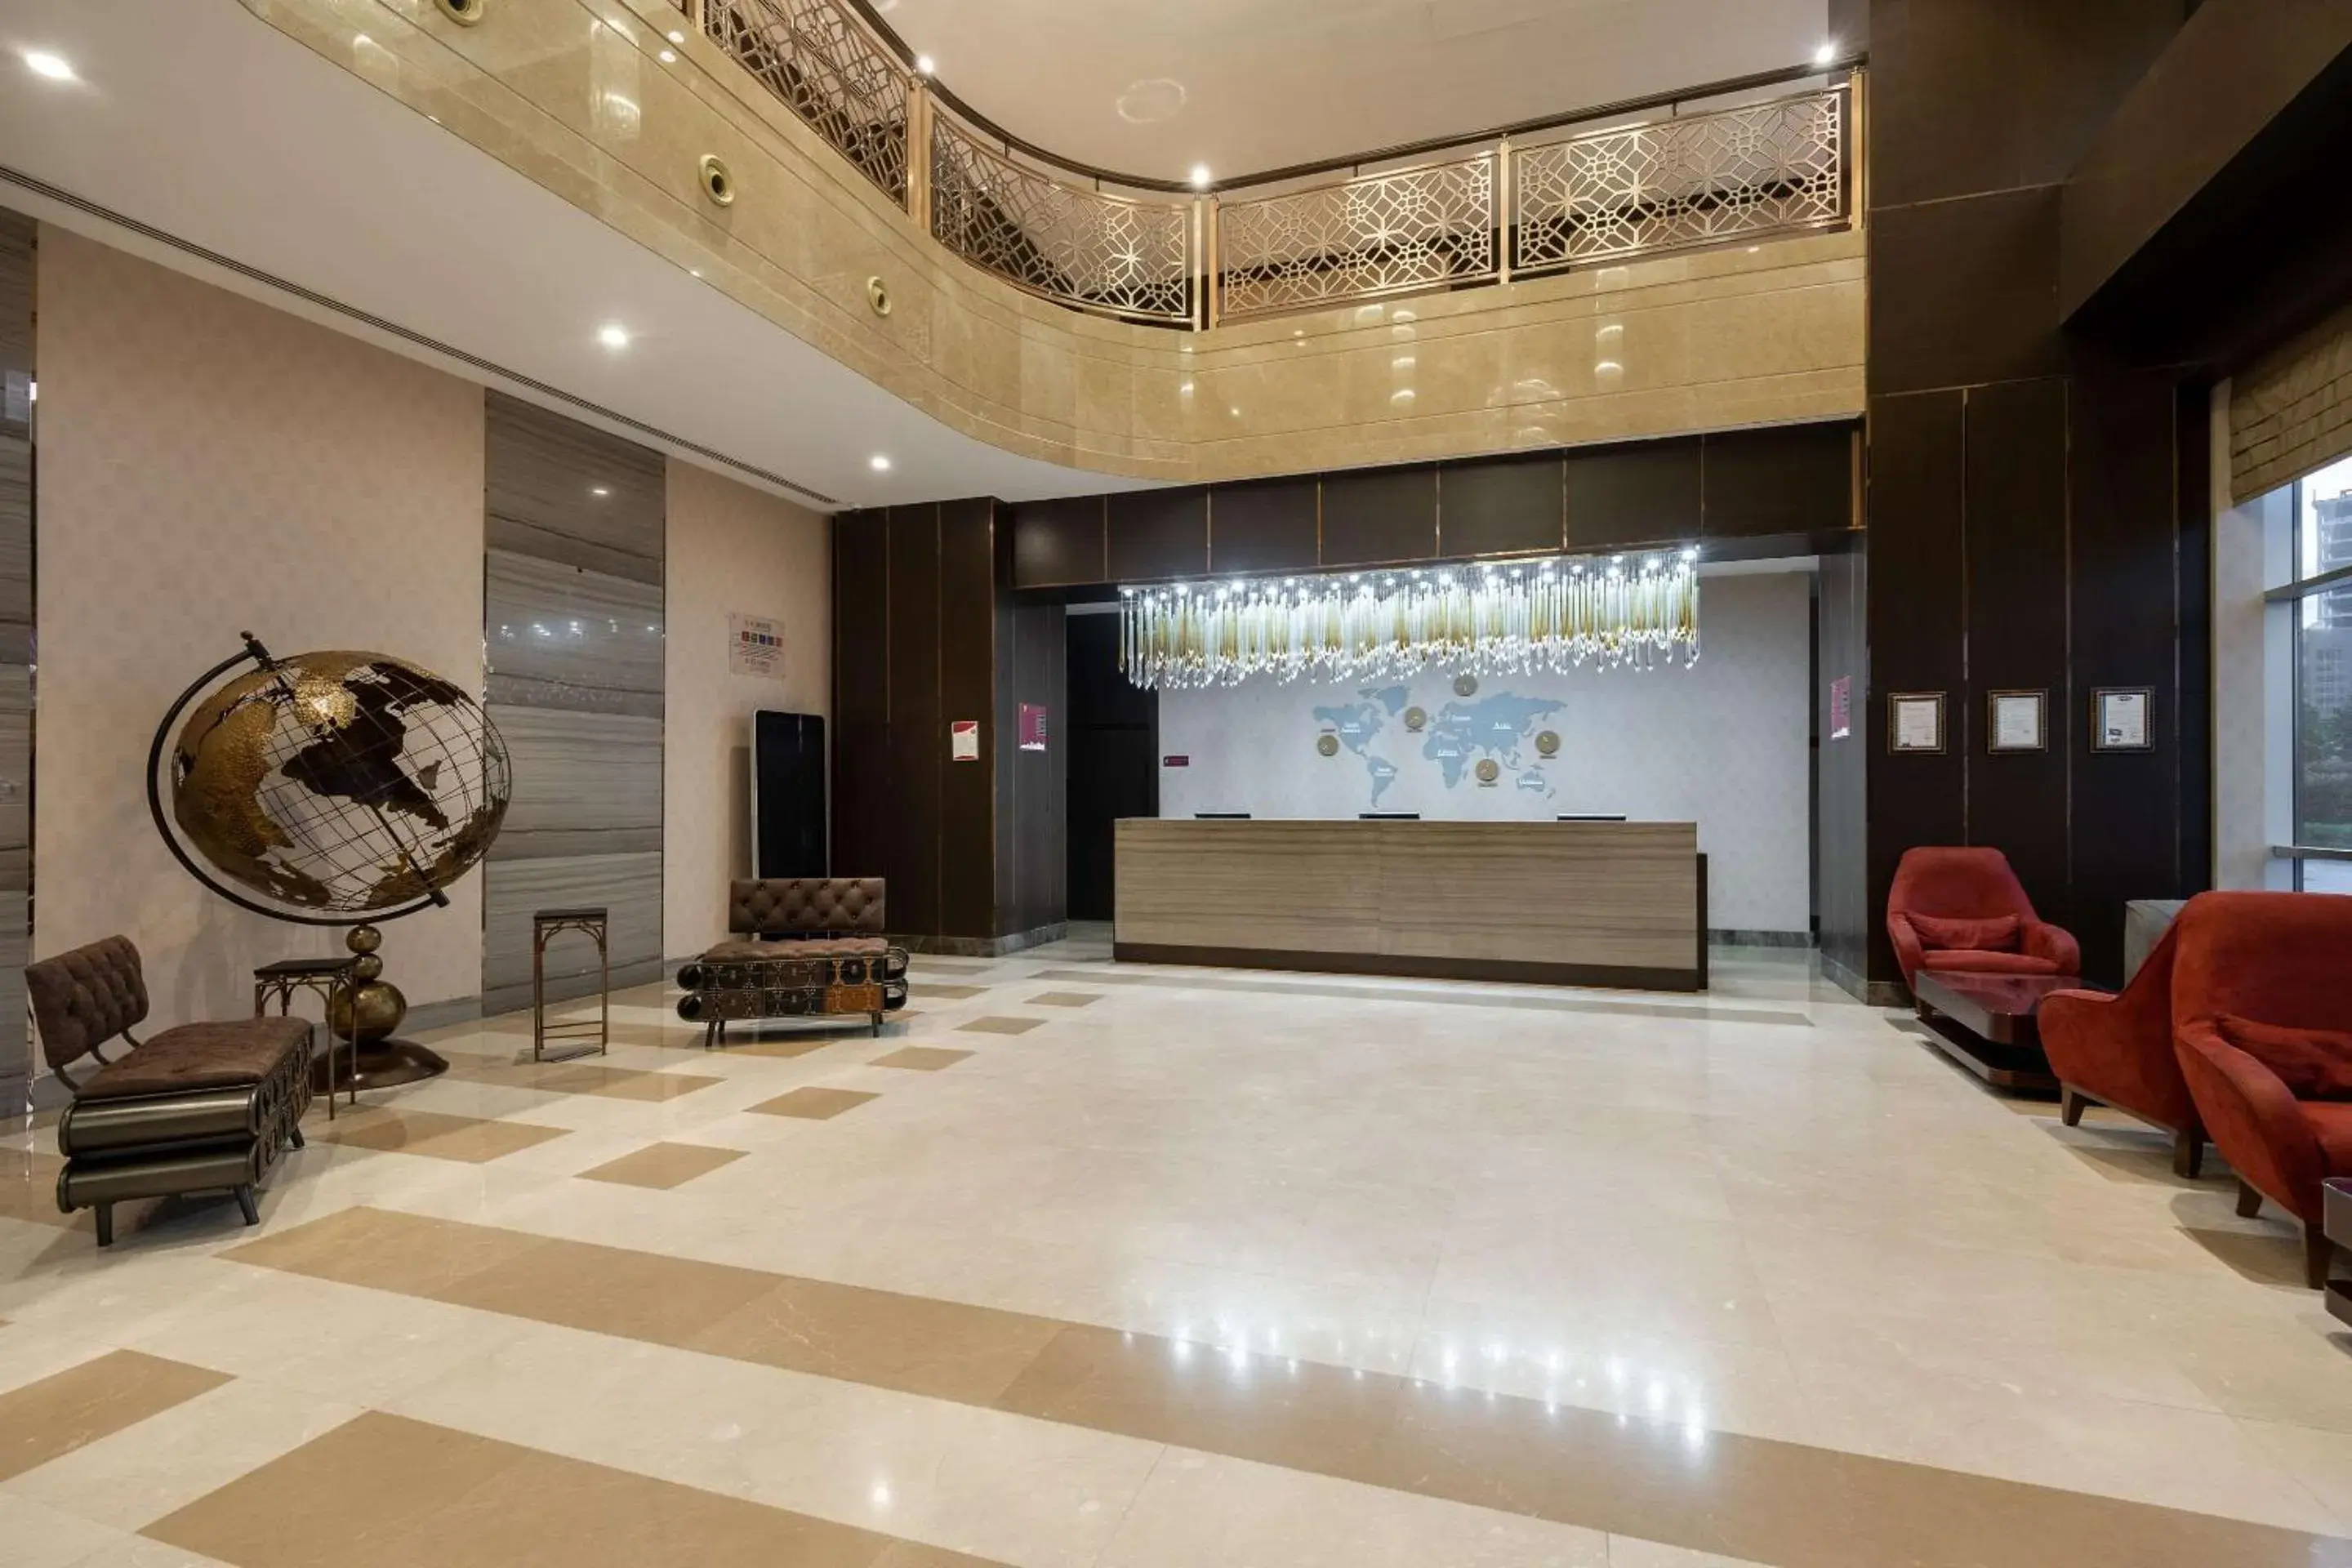 Lobby or reception, Lobby/Reception in Clarion Hotel Istanbul Mahmutbey